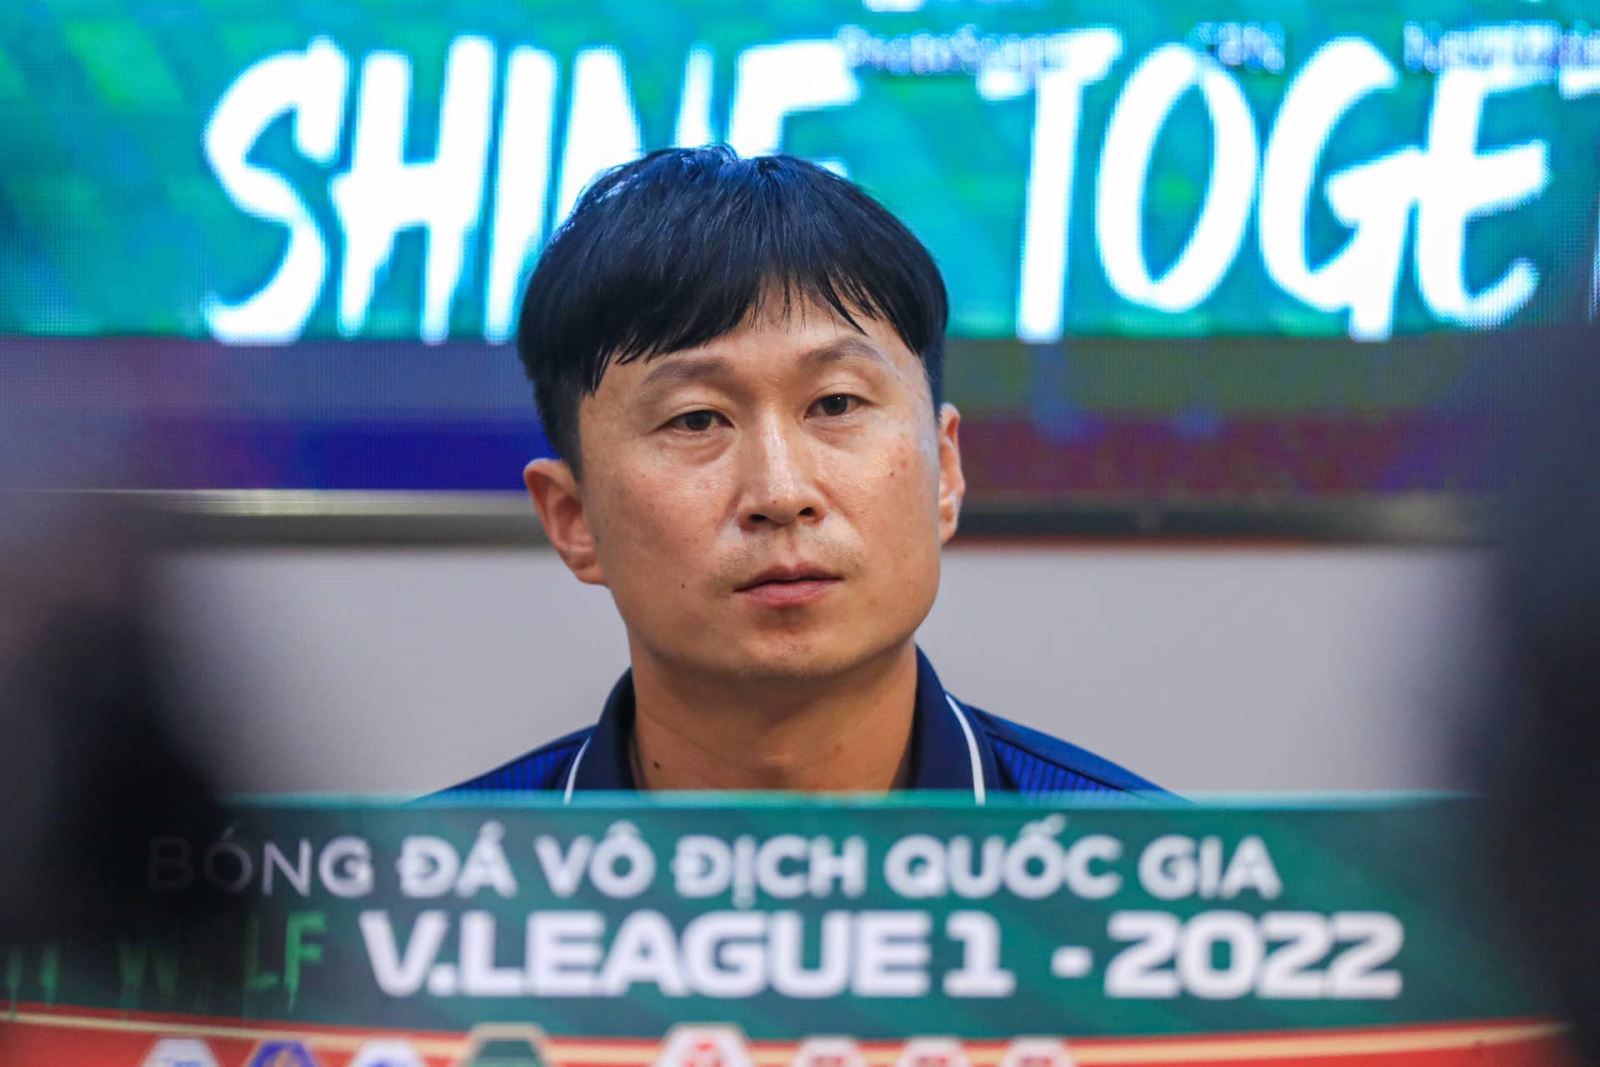 HLV Hà Nội FC: 'Tôi muốn xin lỗi Chủ tịch vì đội không thắng' - Ảnh 1.